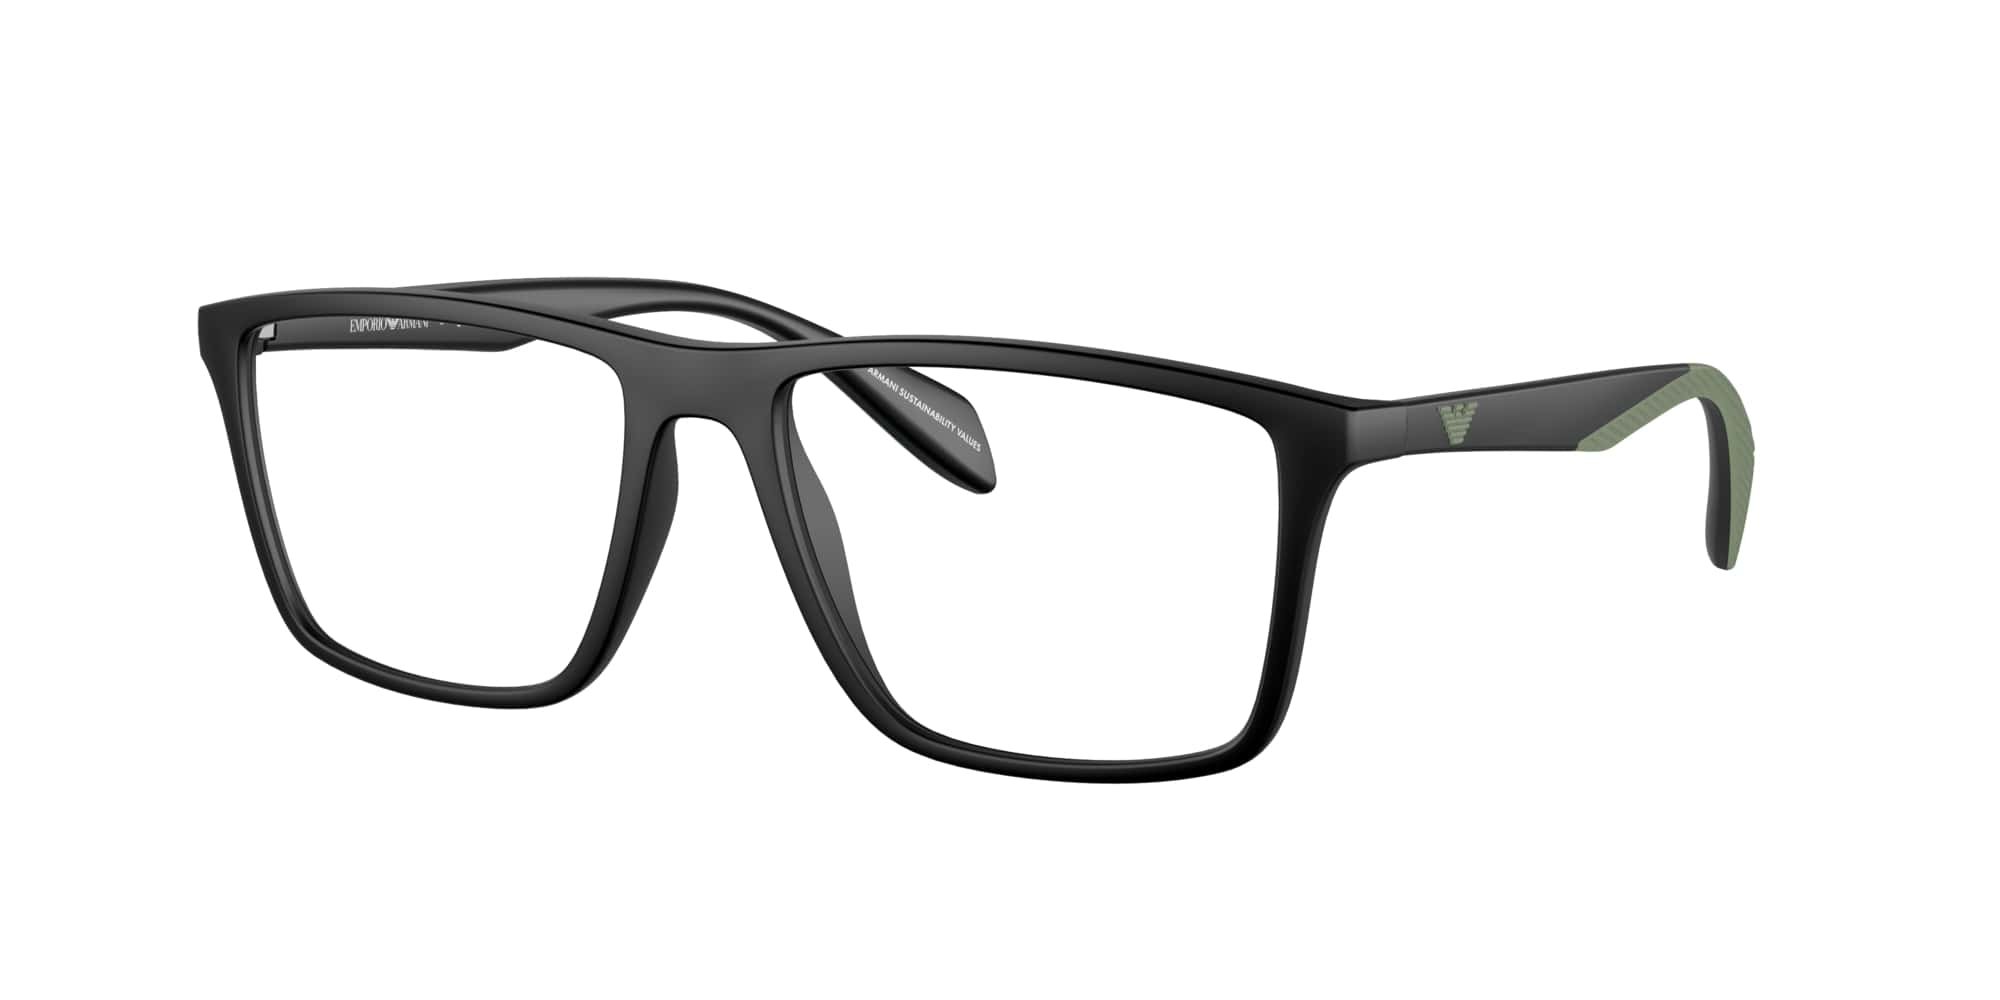 Das Bild zeigt die Korrektionsbrille EA3230 5001 von der Marke Emporio Armani in Schwarz.